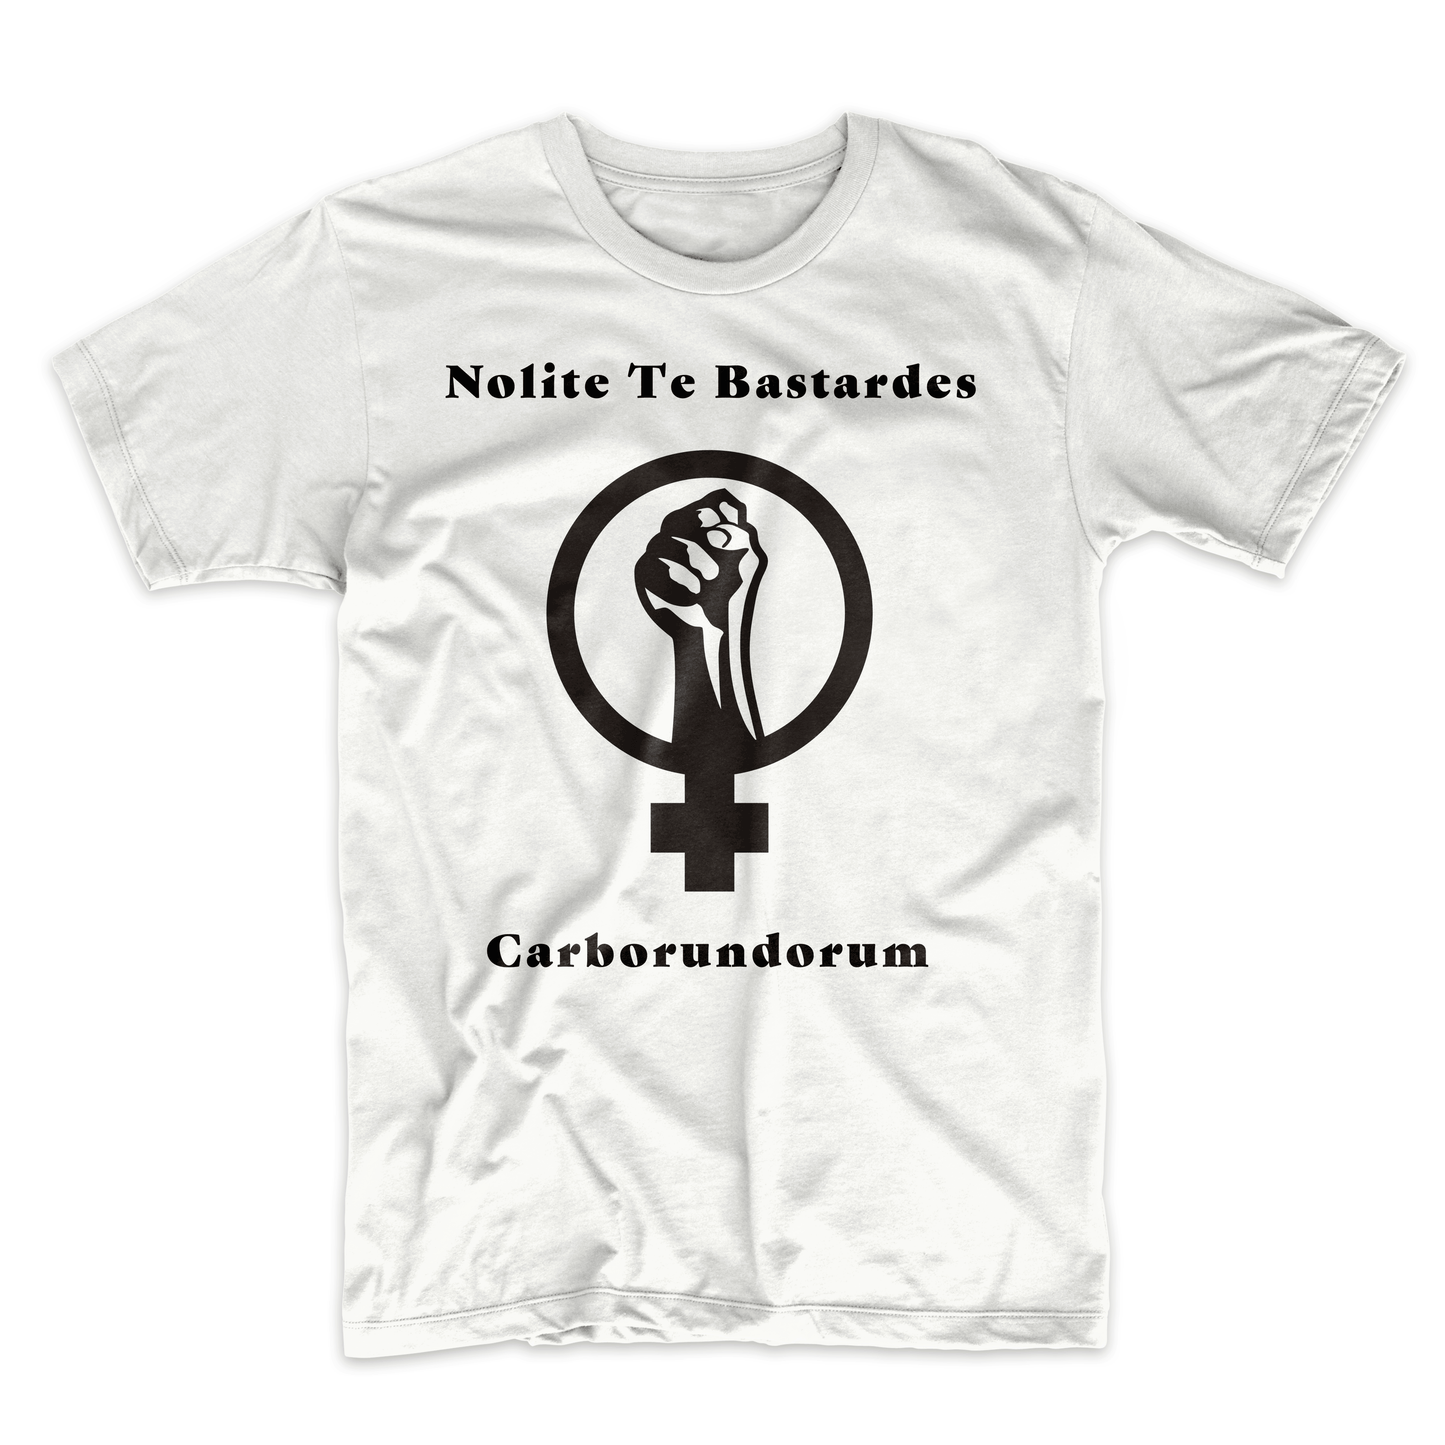 Handmaid's Tale Nolite te Bastardes Carborundorum T-Shirt (Don't Let The Bastards Grind You Down)